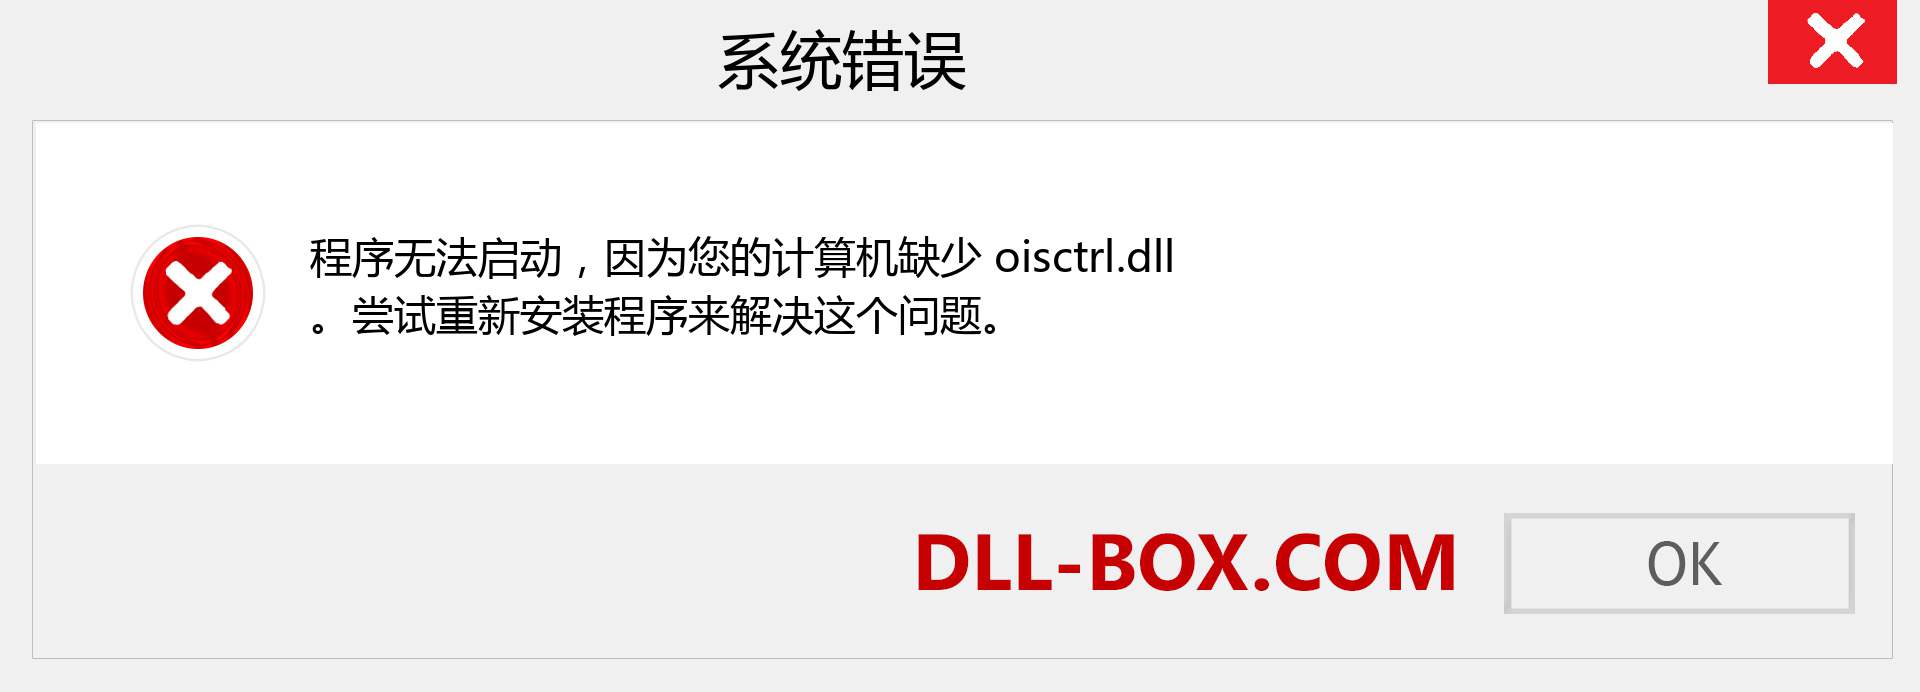 oisctrl.dll 文件丢失？。 适用于 Windows 7、8、10 的下载 - 修复 Windows、照片、图像上的 oisctrl dll 丢失错误